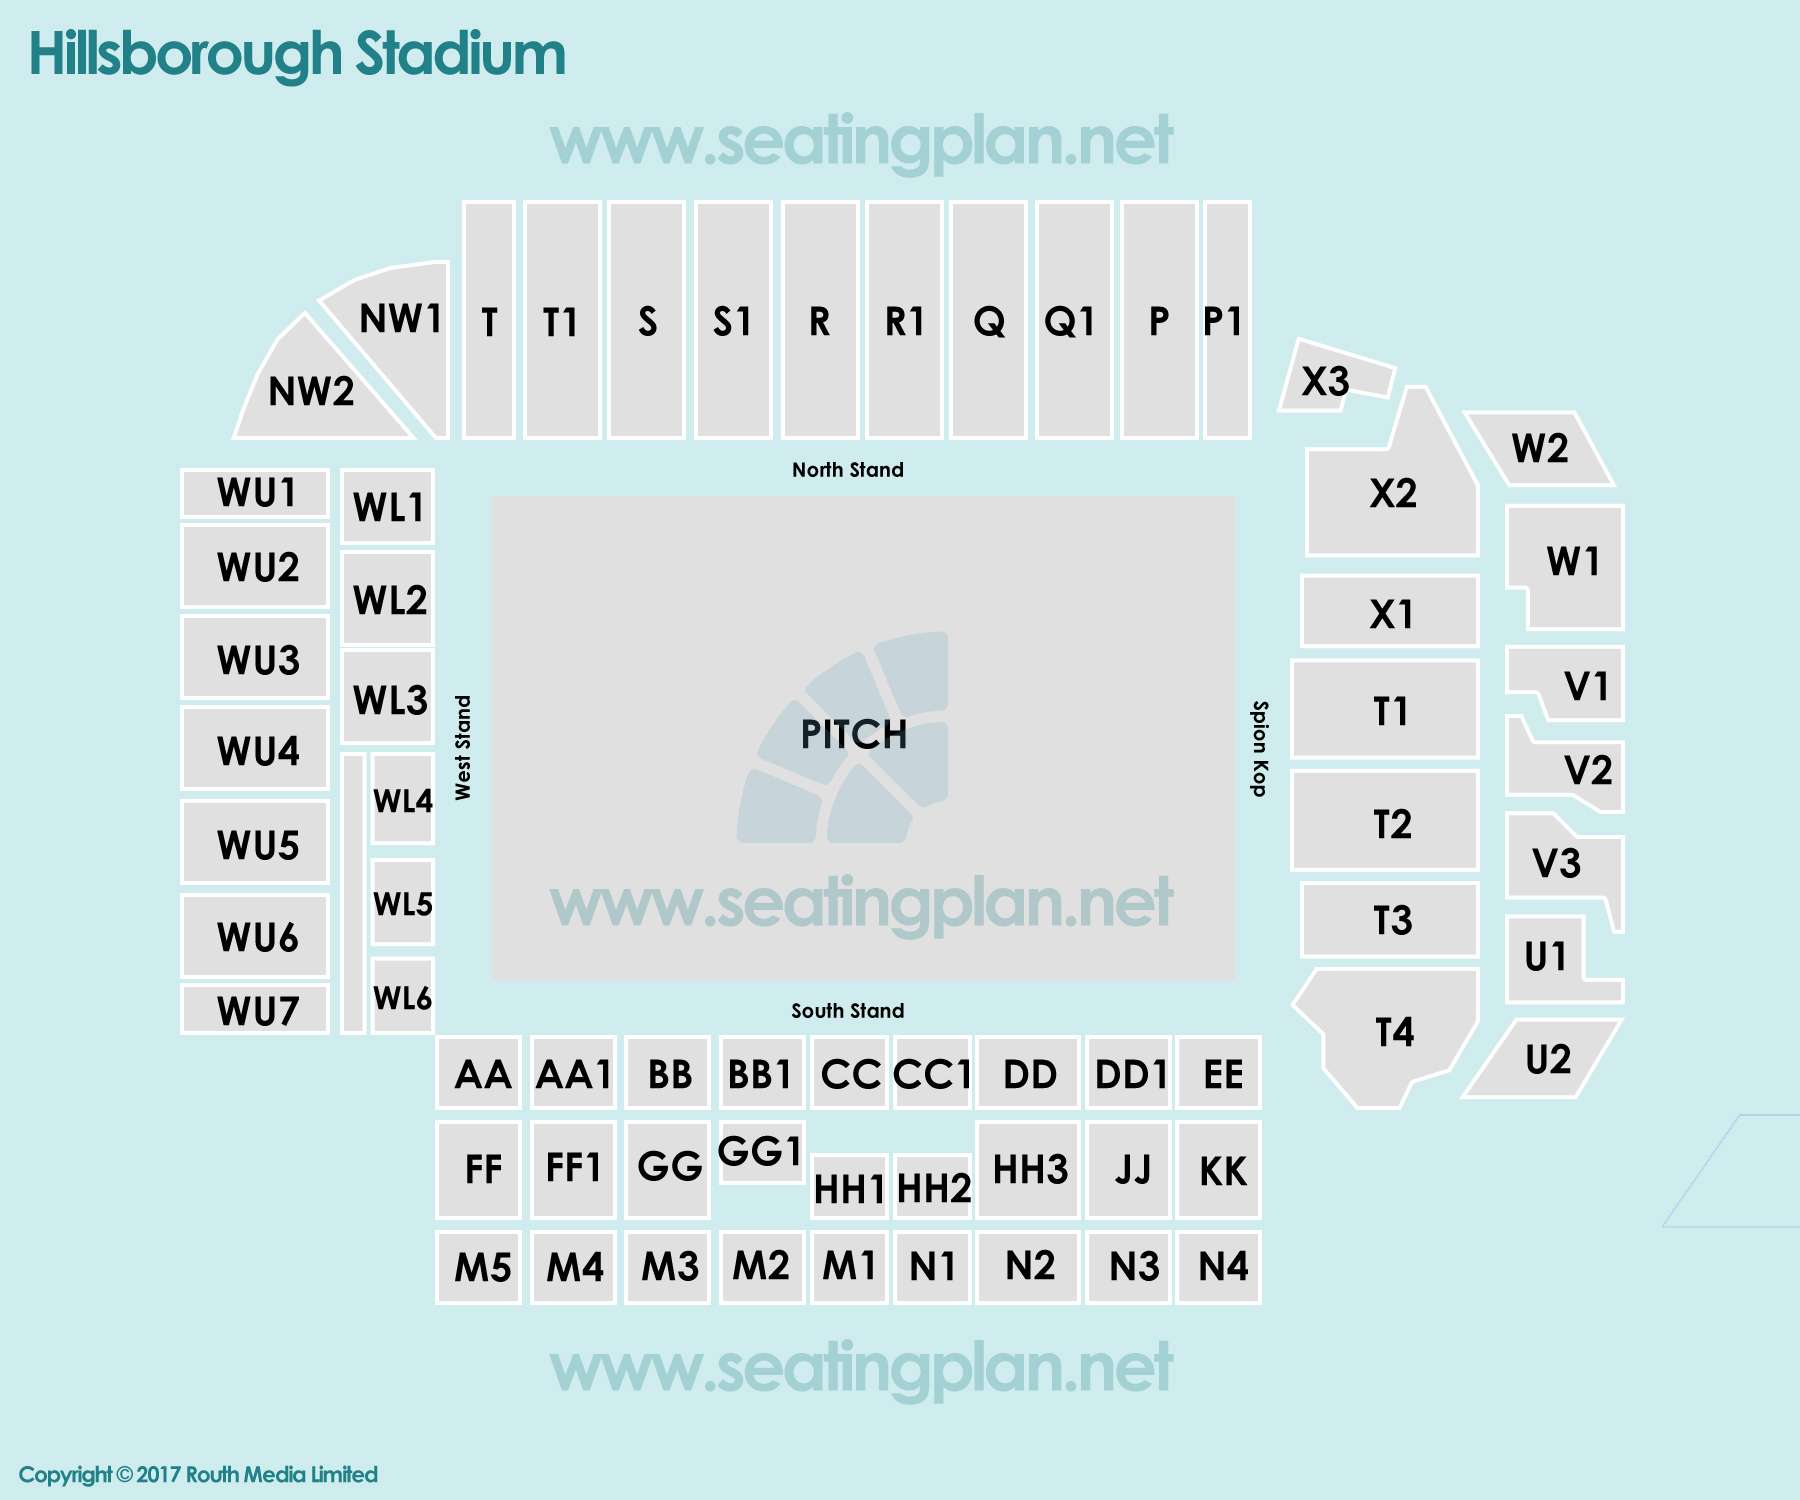 football Seating Plan at Hillsborough Stadium